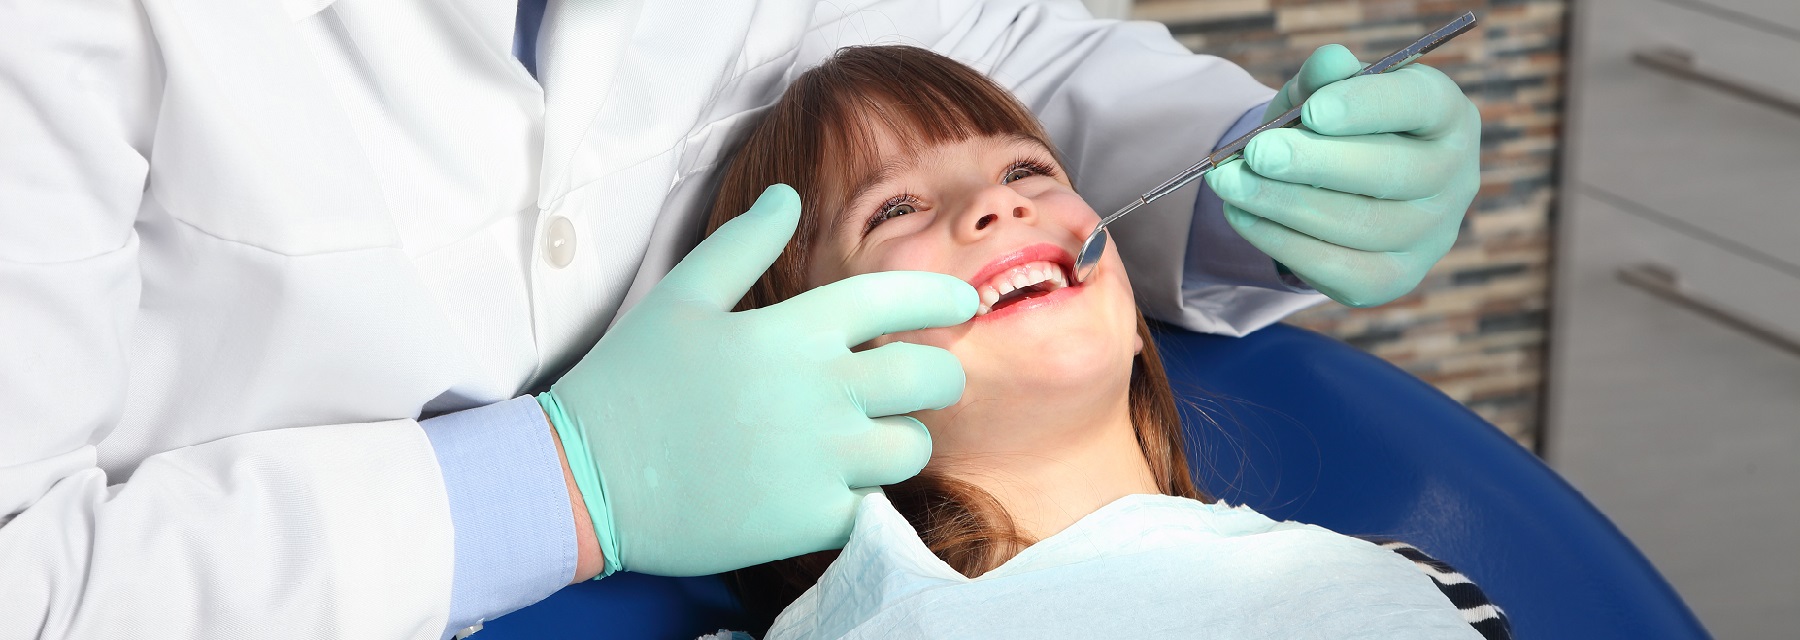 Dentist working for dental insurance